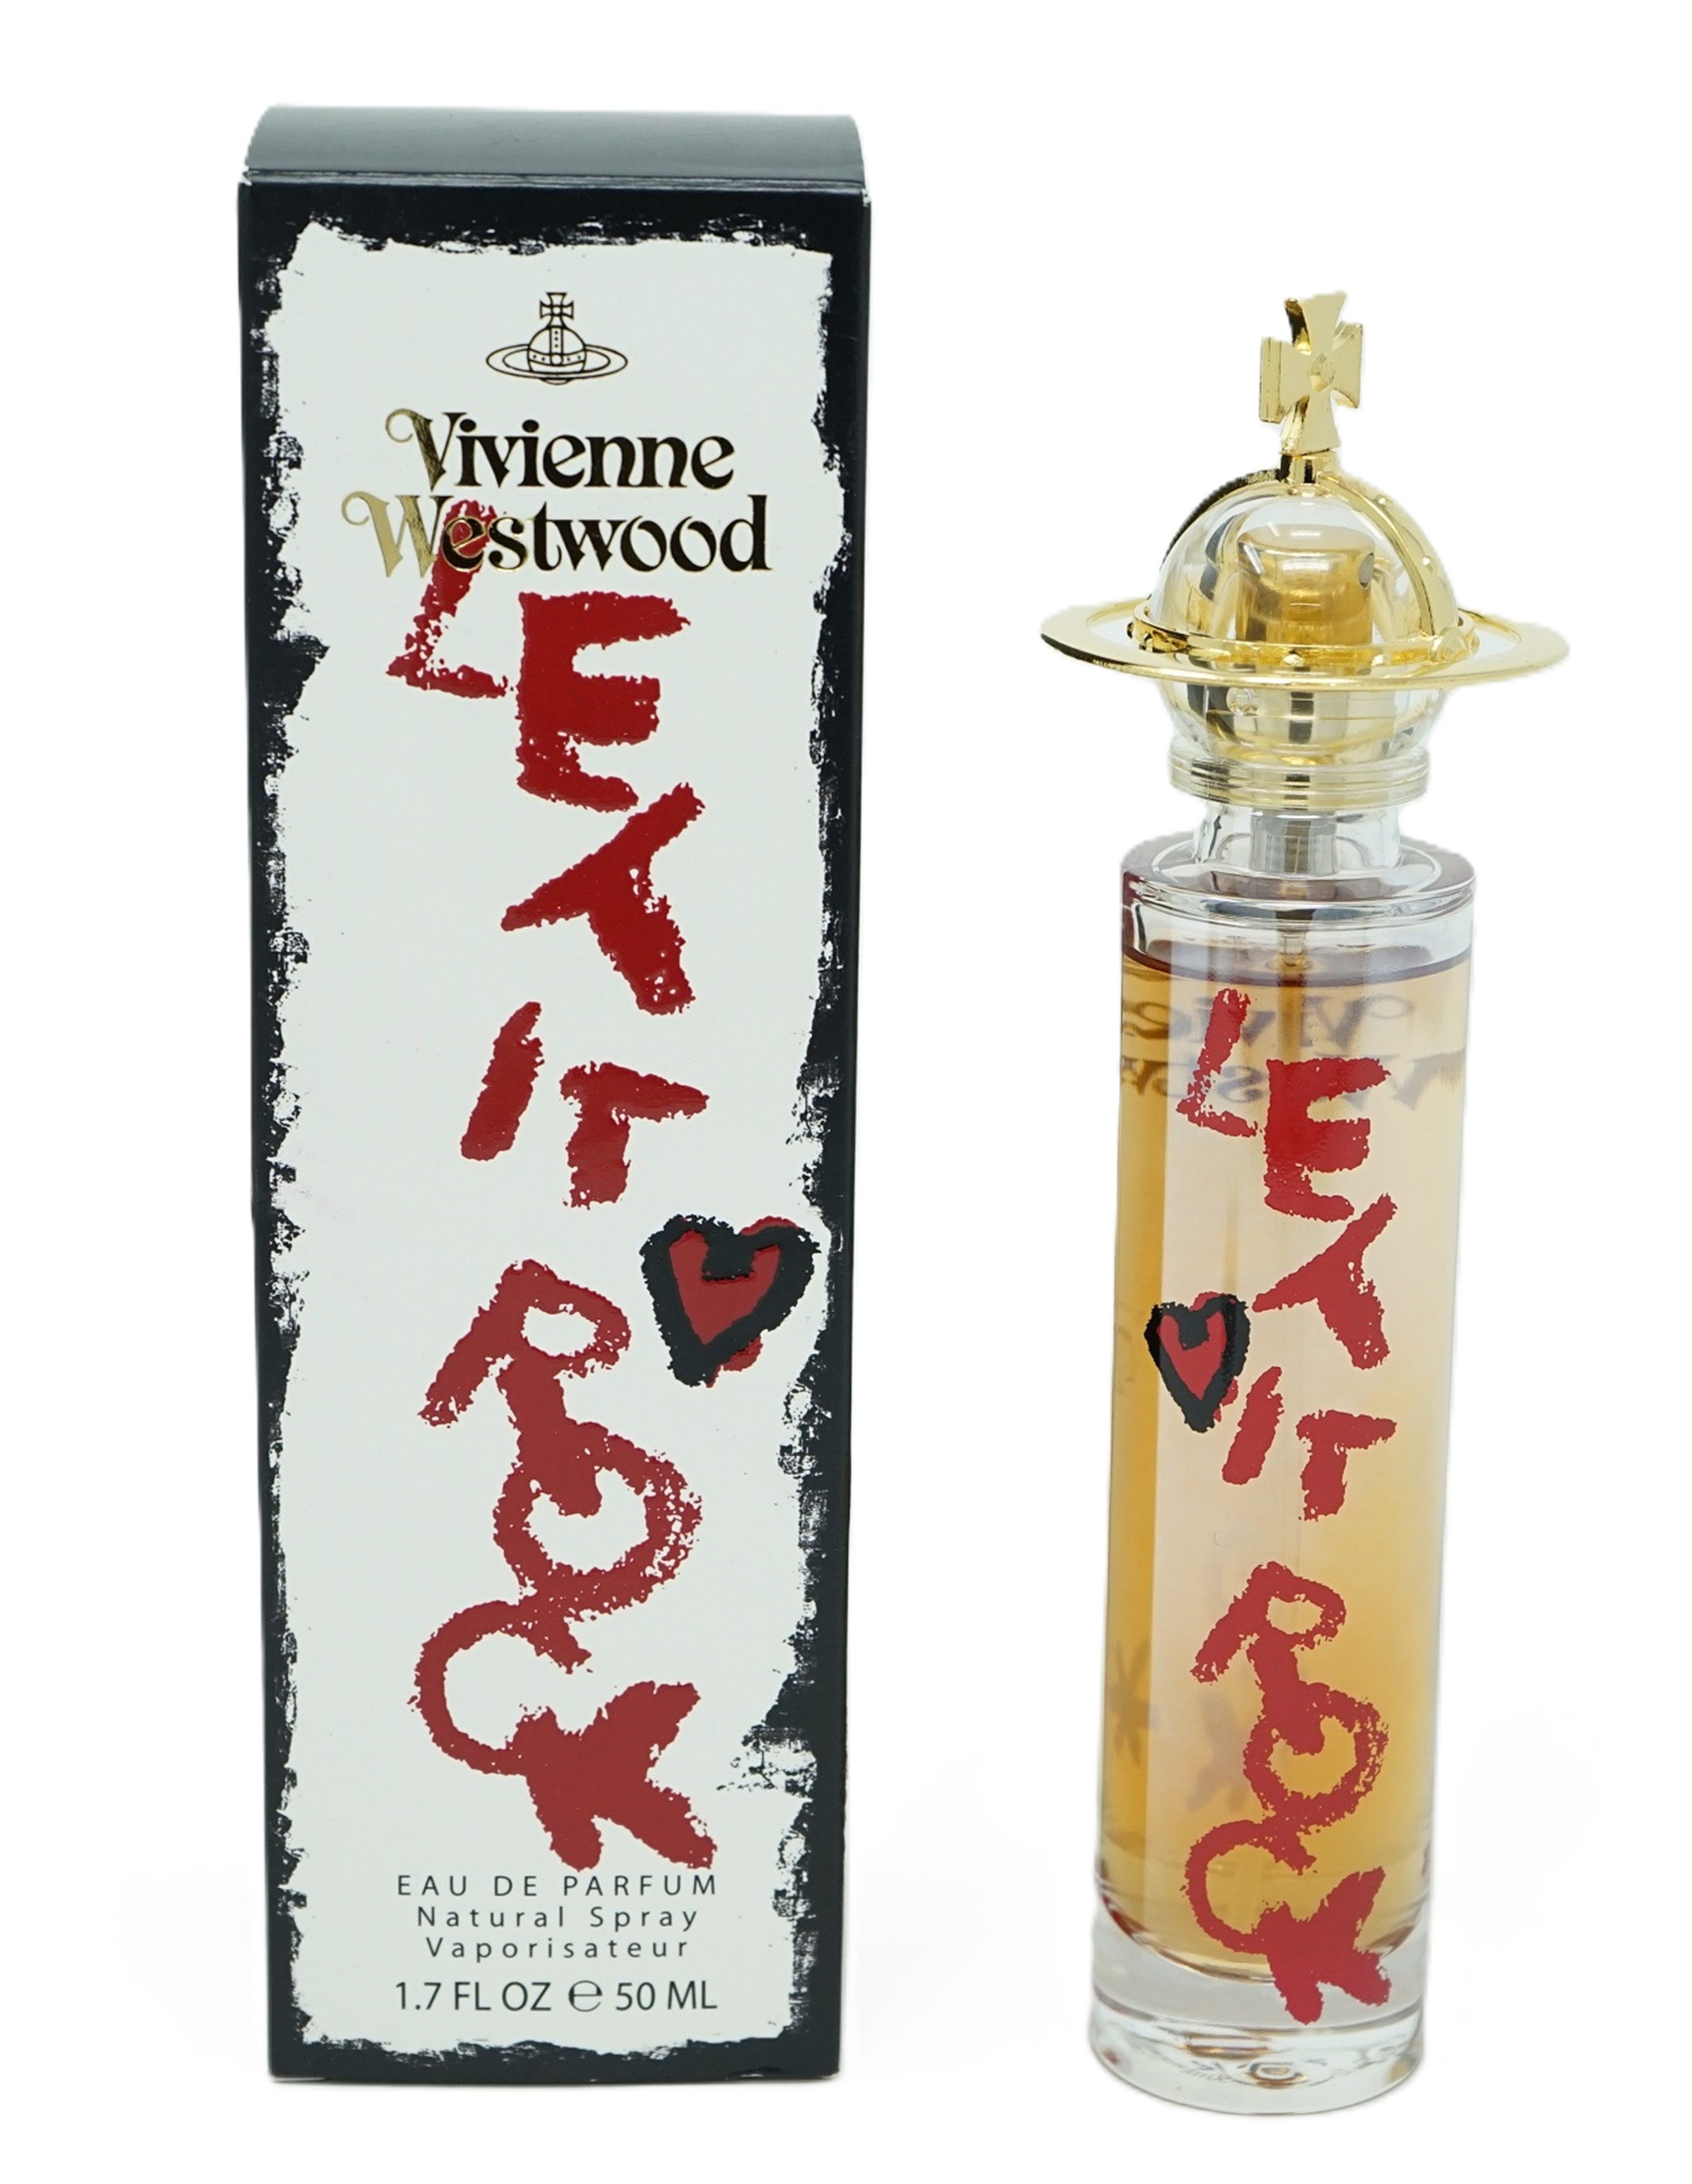 Vivienne Westwood Eau de Toilette Vivienne Westwood let it rock eau de parfum 50 ml